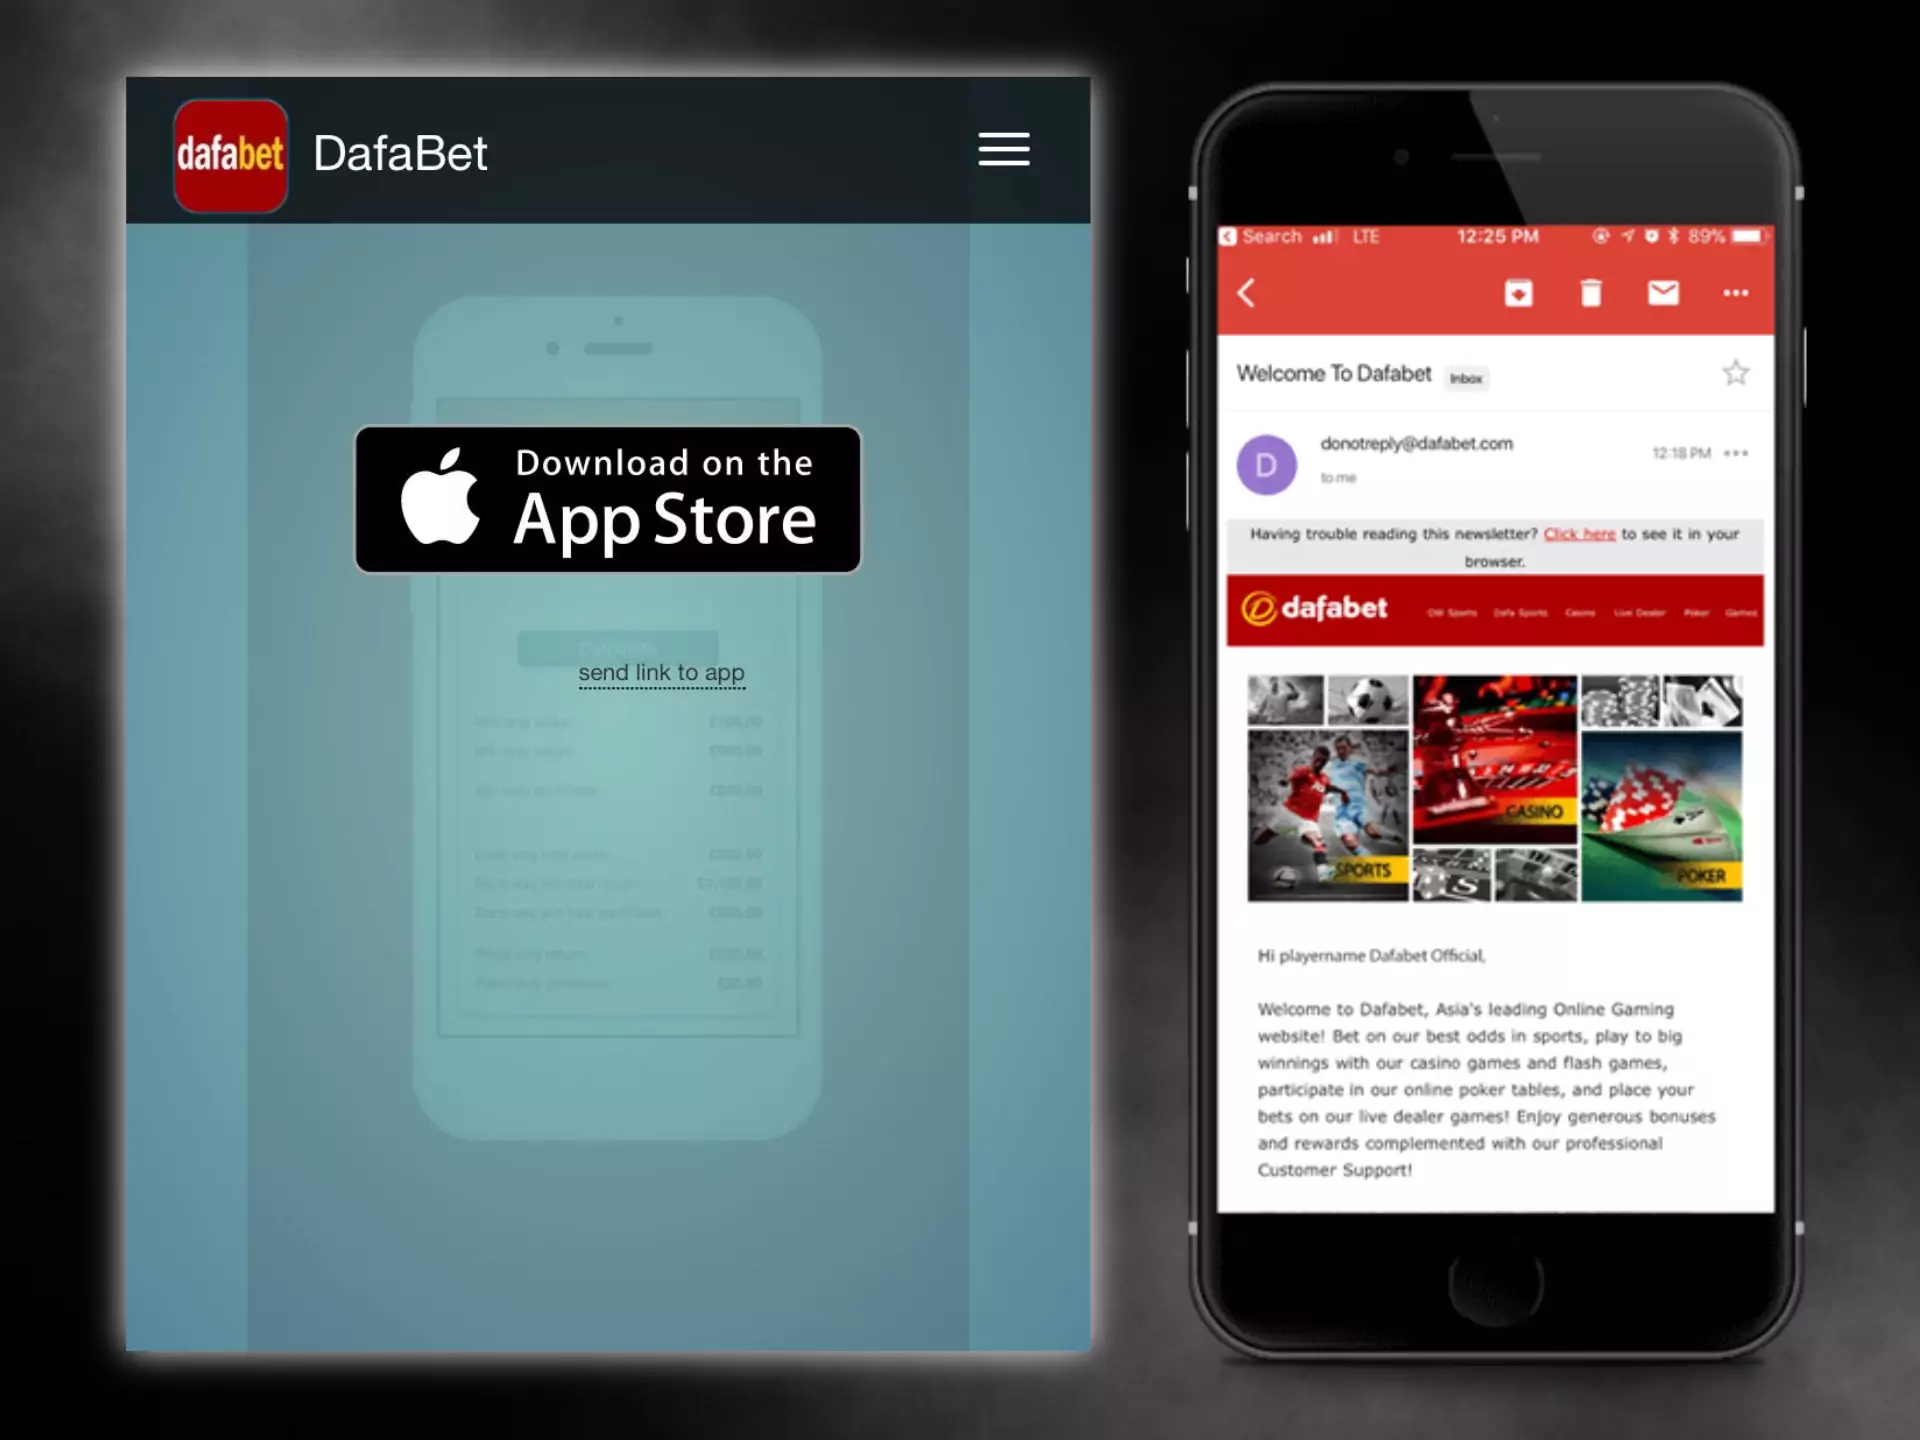 आपके आईफोन को Dafabet ऐप को डाउनलोड और इंस्टॉल करने के लिए आवश्यक आवश्यकताओं को पूरा करना चाहिए।